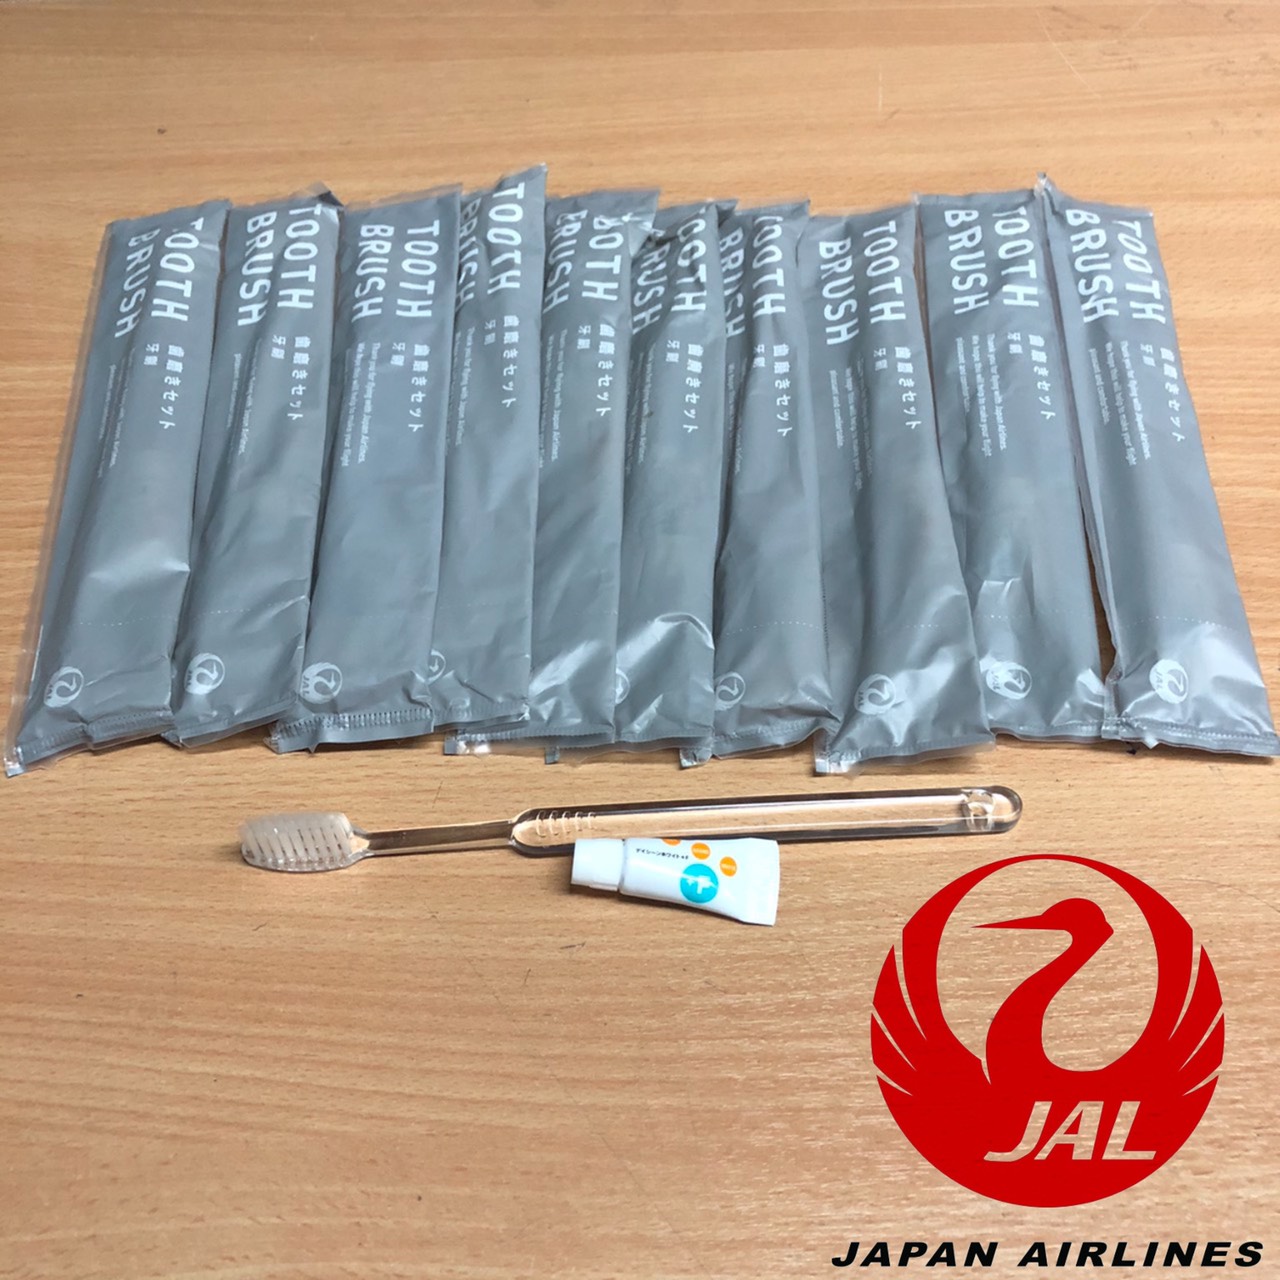 ชุดแปรงสีฟันเกรด A+ สำหรับโรงแรม พกพา(แถมยาสีฟัน)ของสายการบิน JAPAN AIRLINES